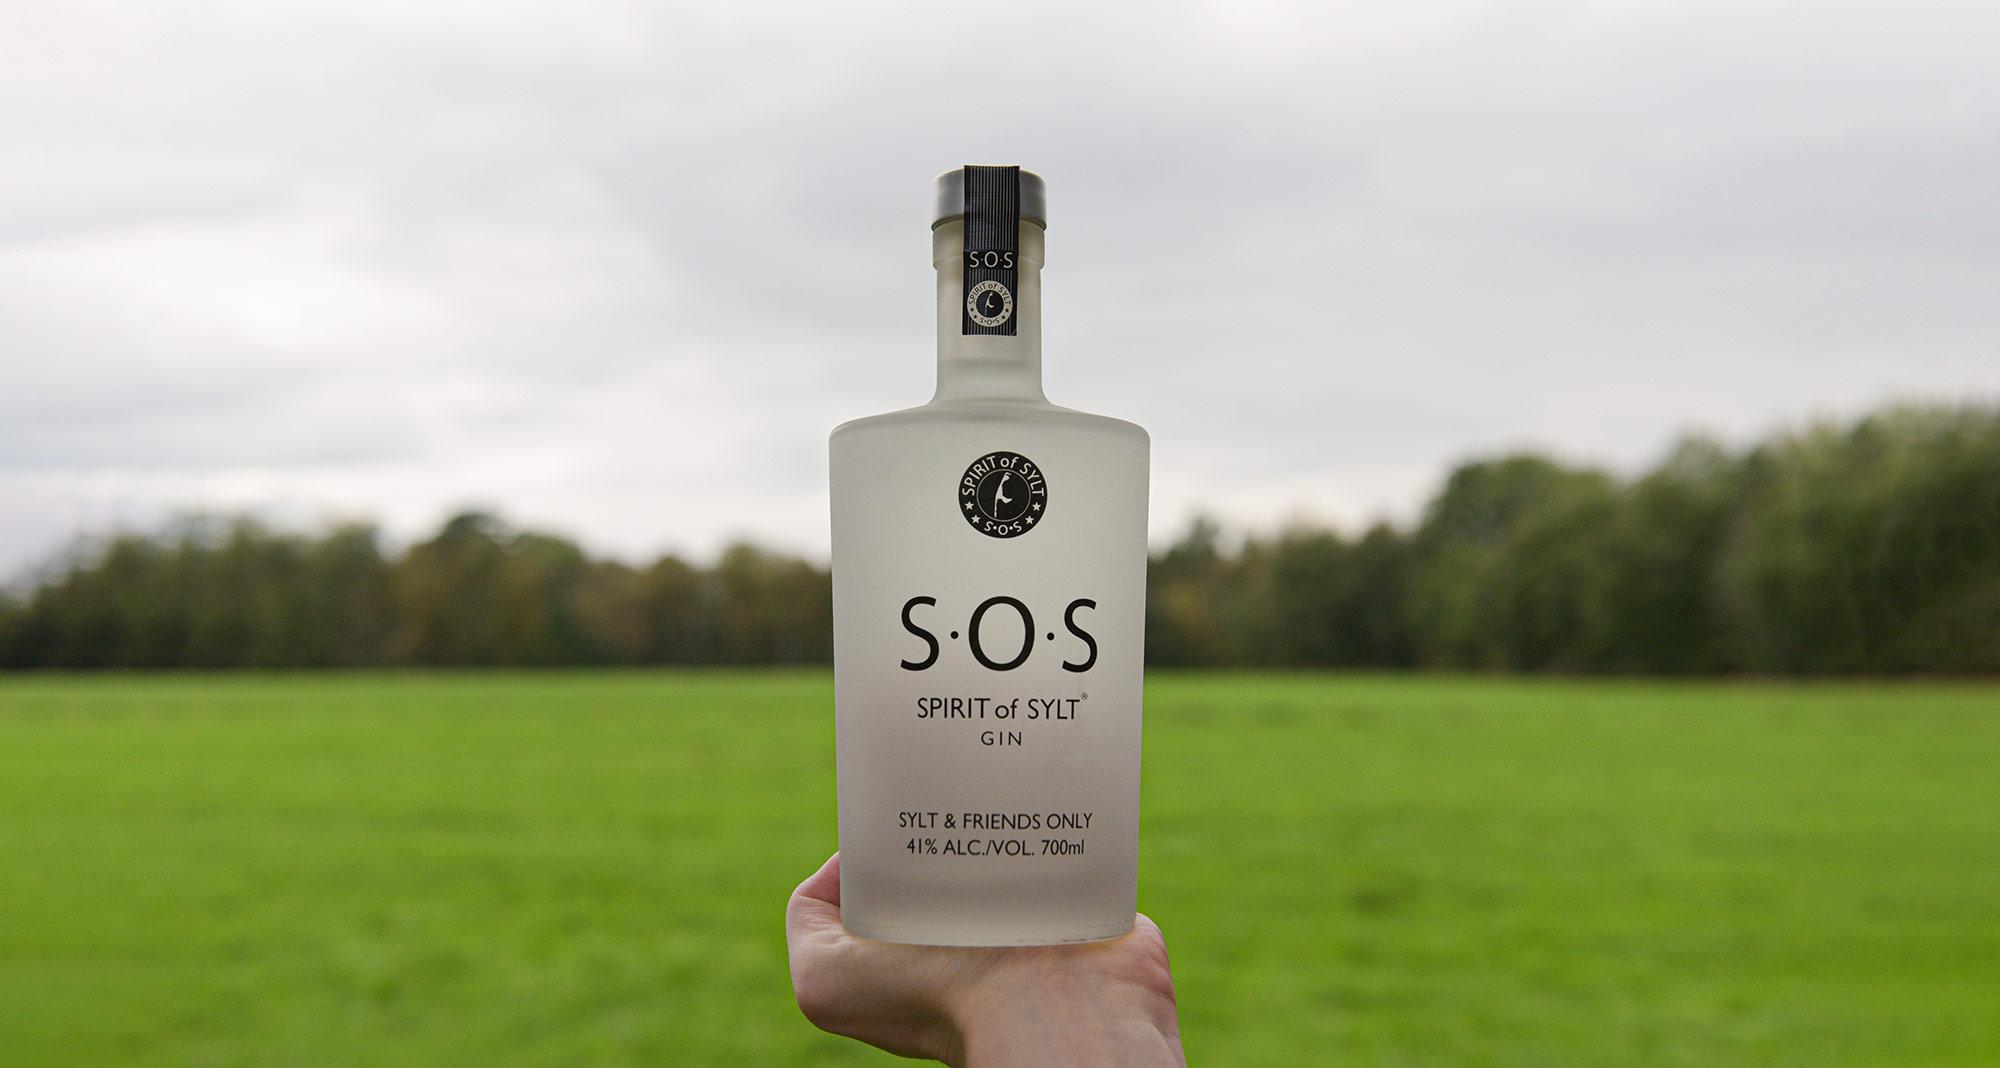 Eine Flasche des S.O.S. Spirit of Sylt Premium Gin auf einem schlichten, weißen Hintergrund mit einem Etikett in blauen Farben, das einen Sylter Leuchtturm zeigt und den Namen des Gins trägt.